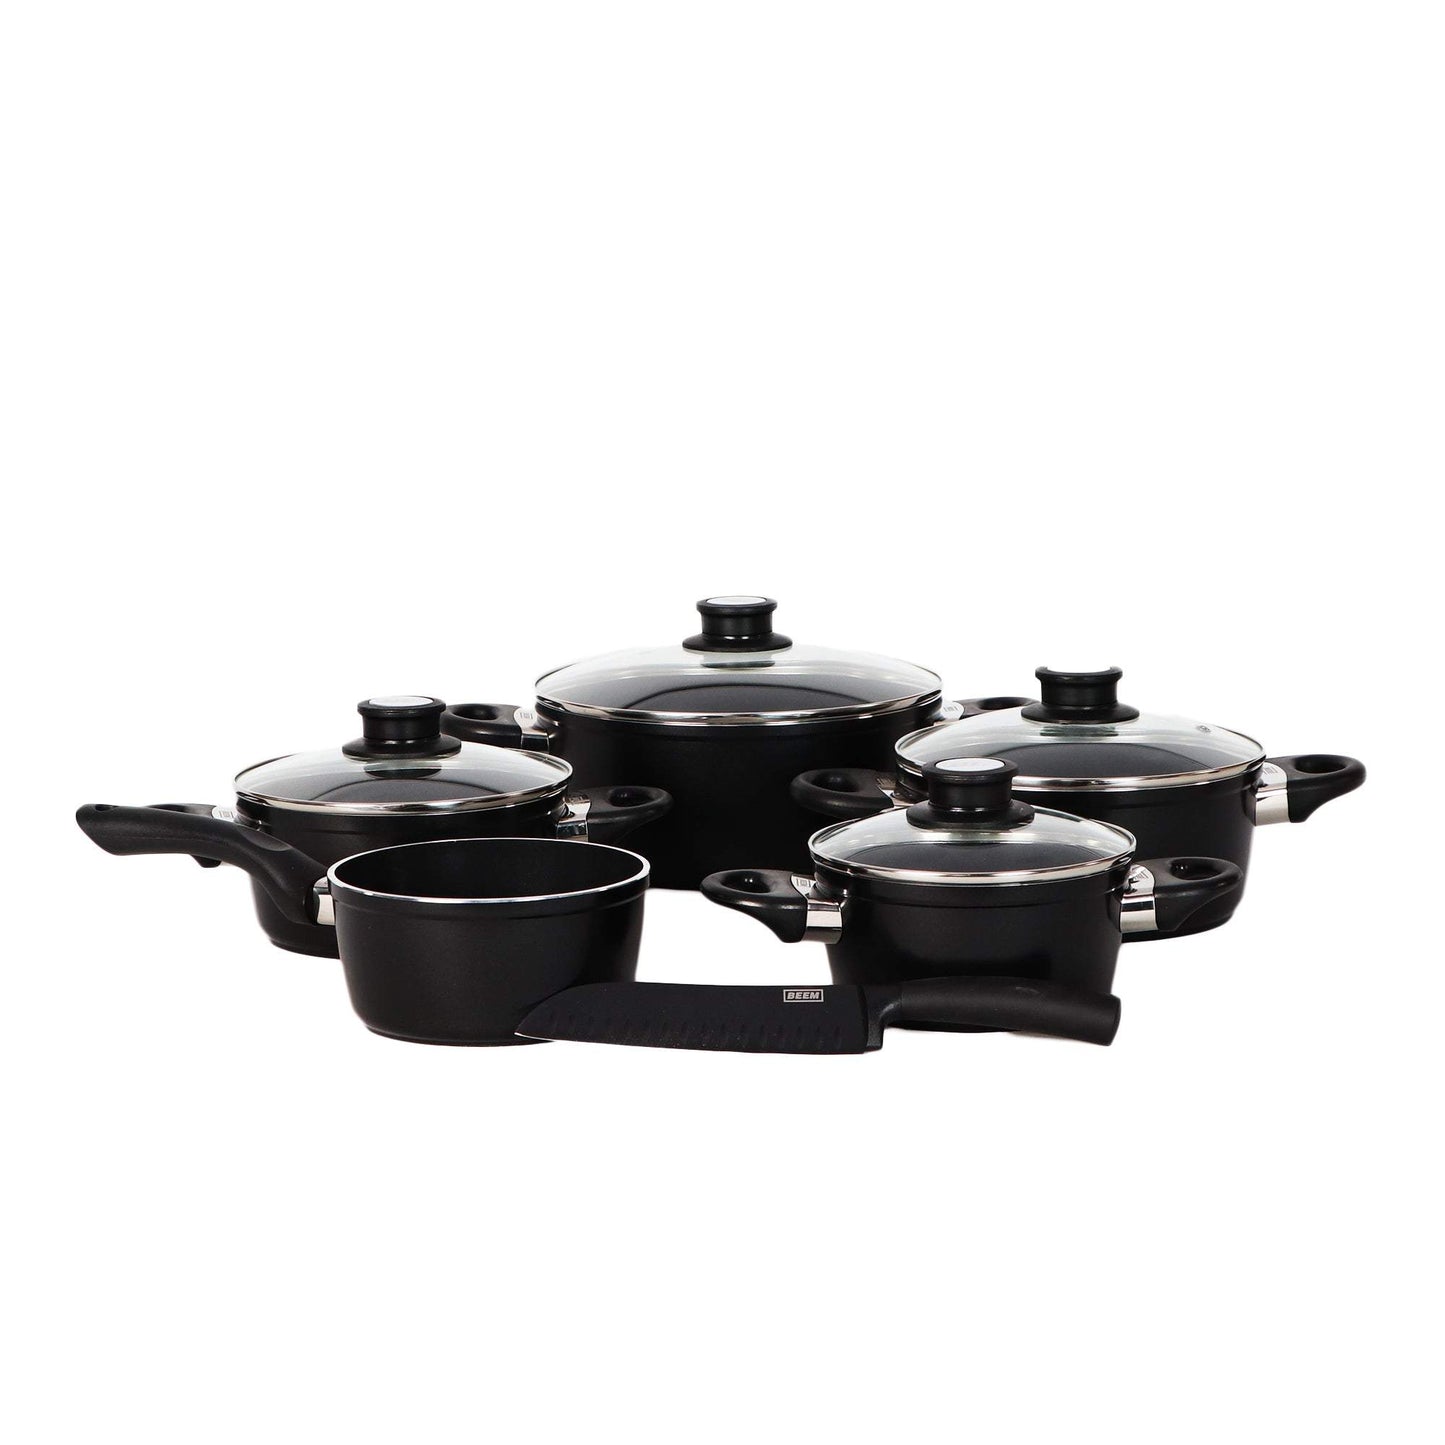 Beem 10 Piece Nonstick Dishwasher Safe Cookware Set, Black-Royal Brands Co-